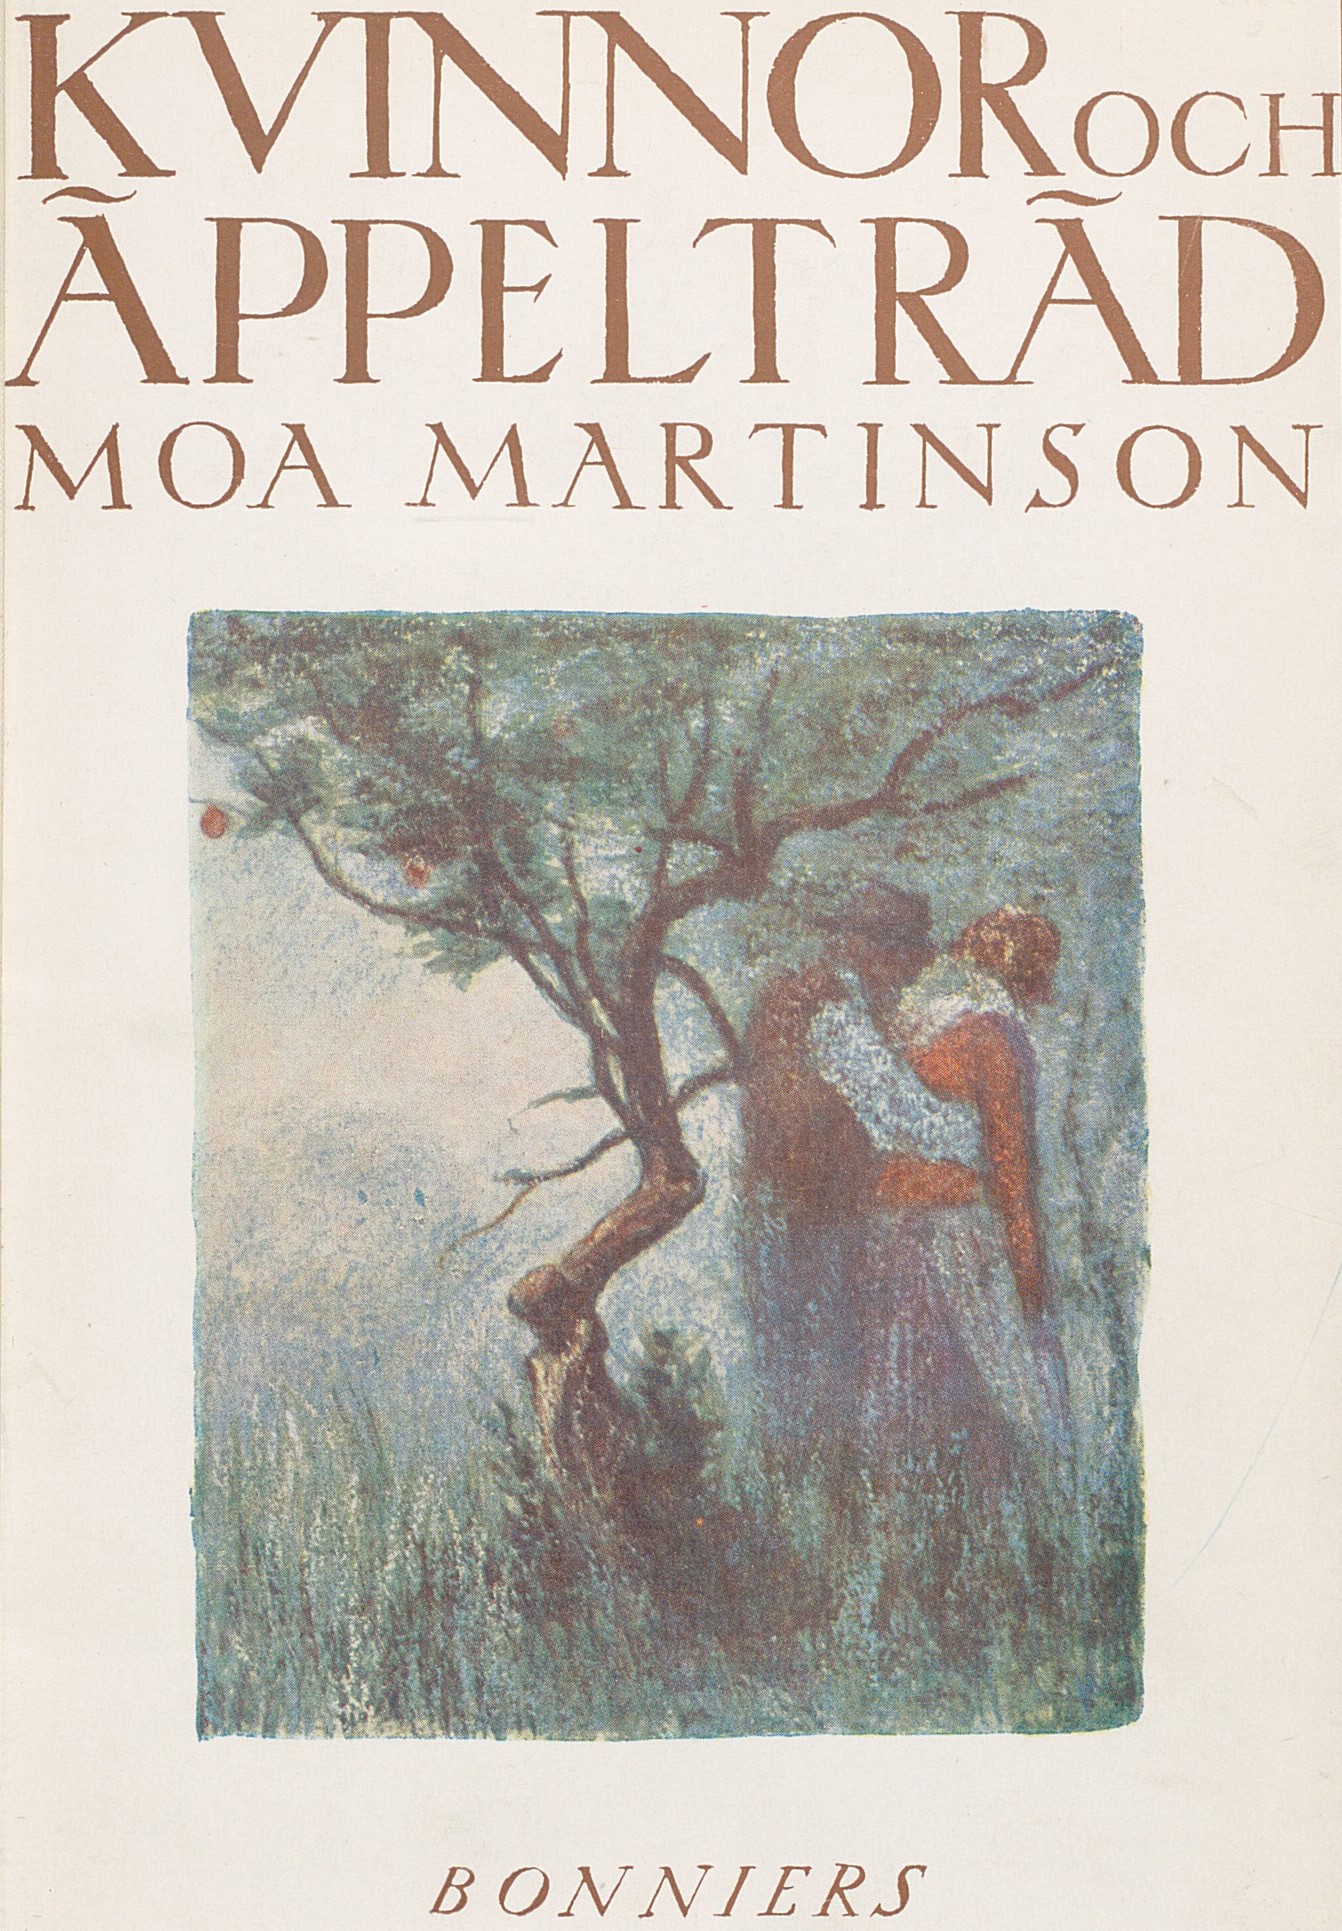 Bokomslag med man och kvinna framför ett äppelträd. Text: Kvinnor och äppelträd.